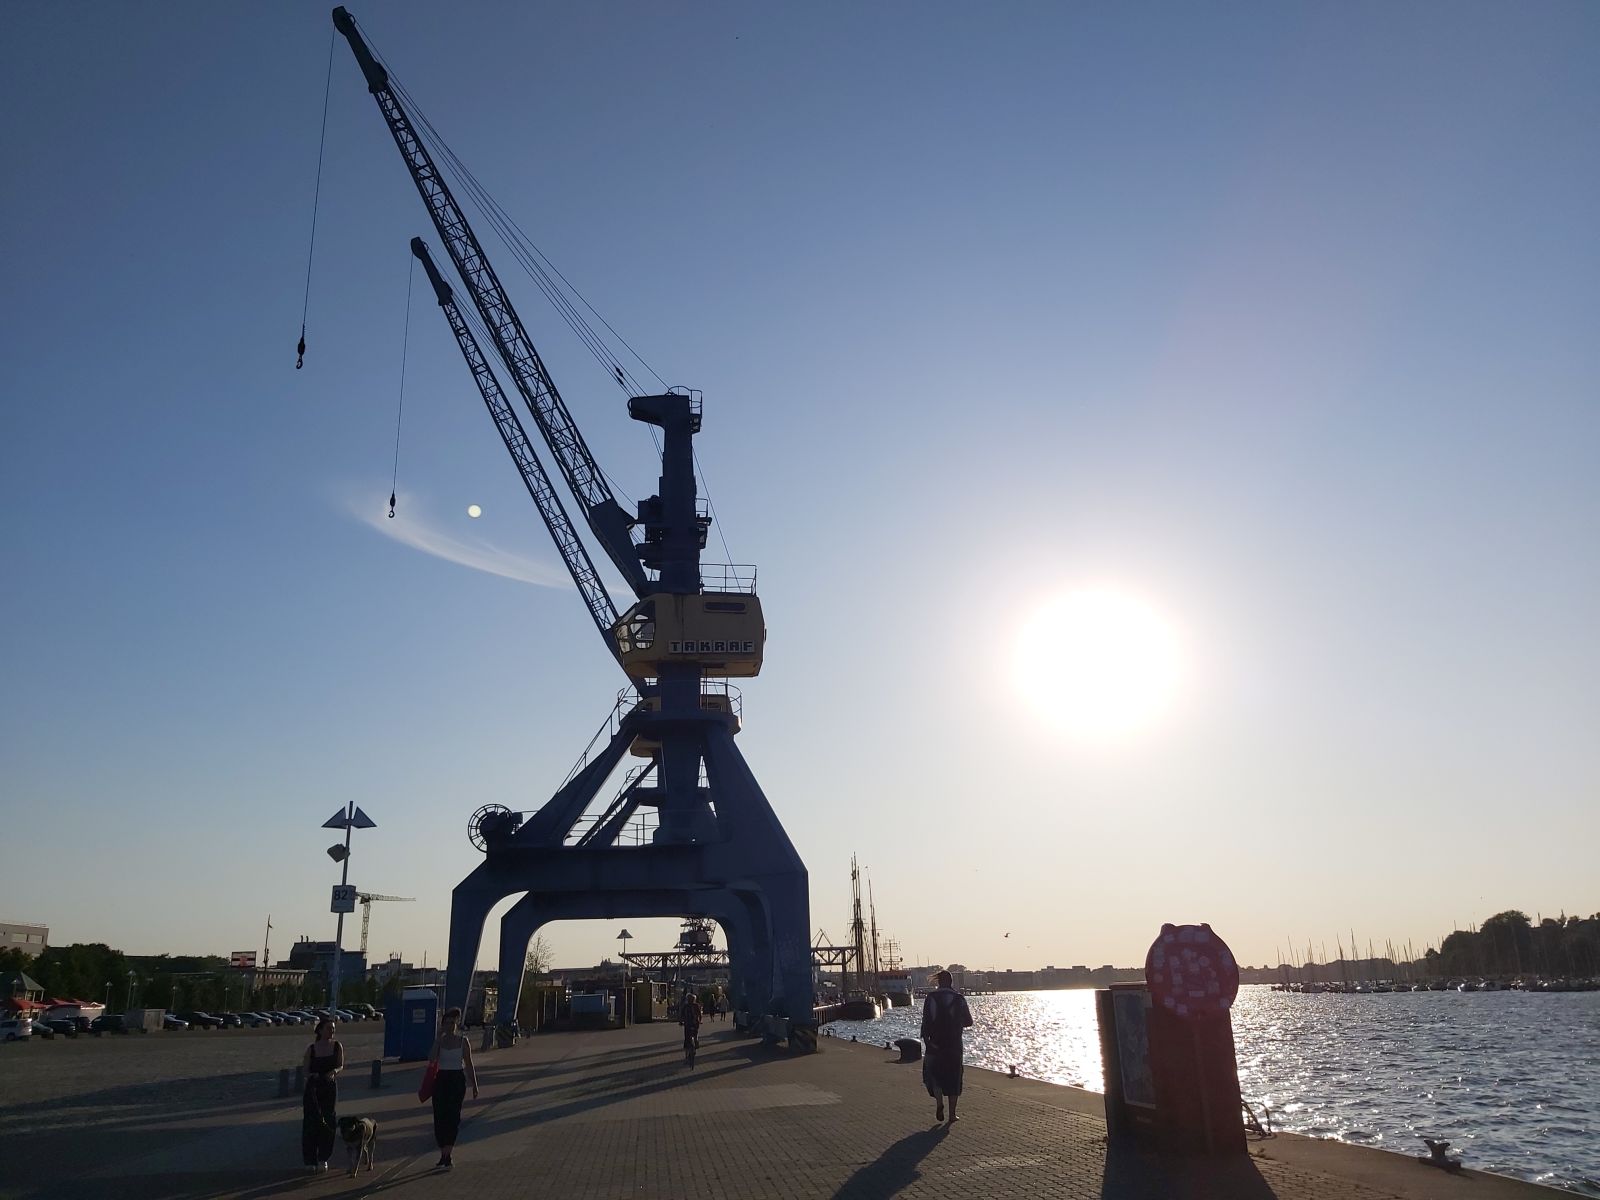 Rostock und die zwei Kräne im Stadthafen